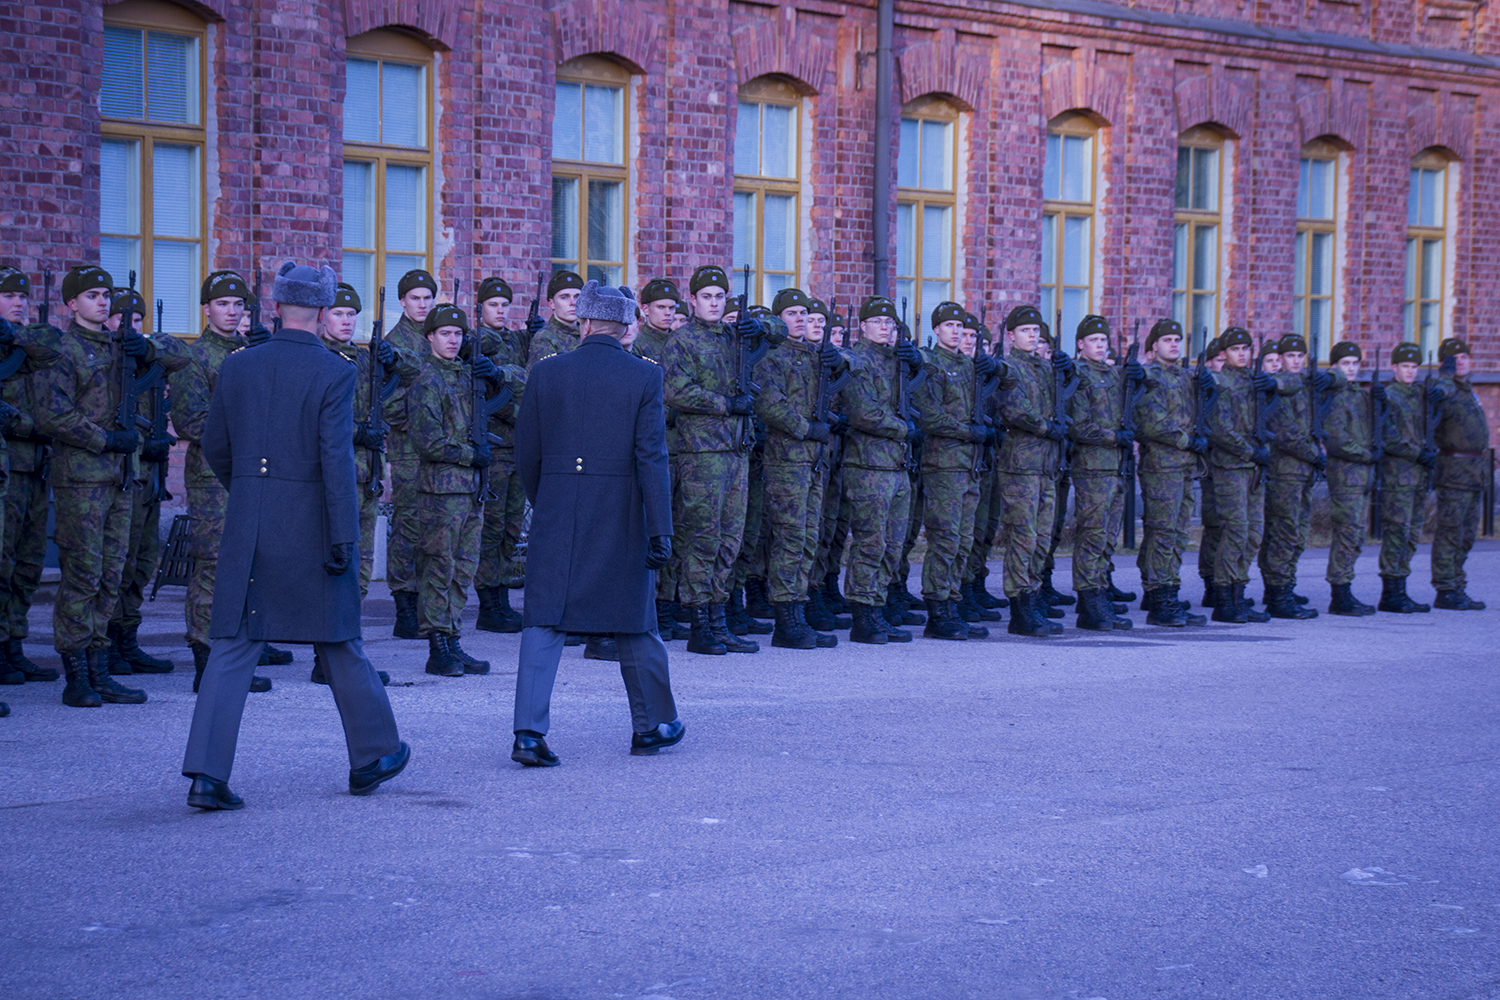 Varusmiehet seisovat muodossa rynnäkkökiväärit eteen vietynä kun komentaja marssii heidän edestä ja tarkastaa joukot